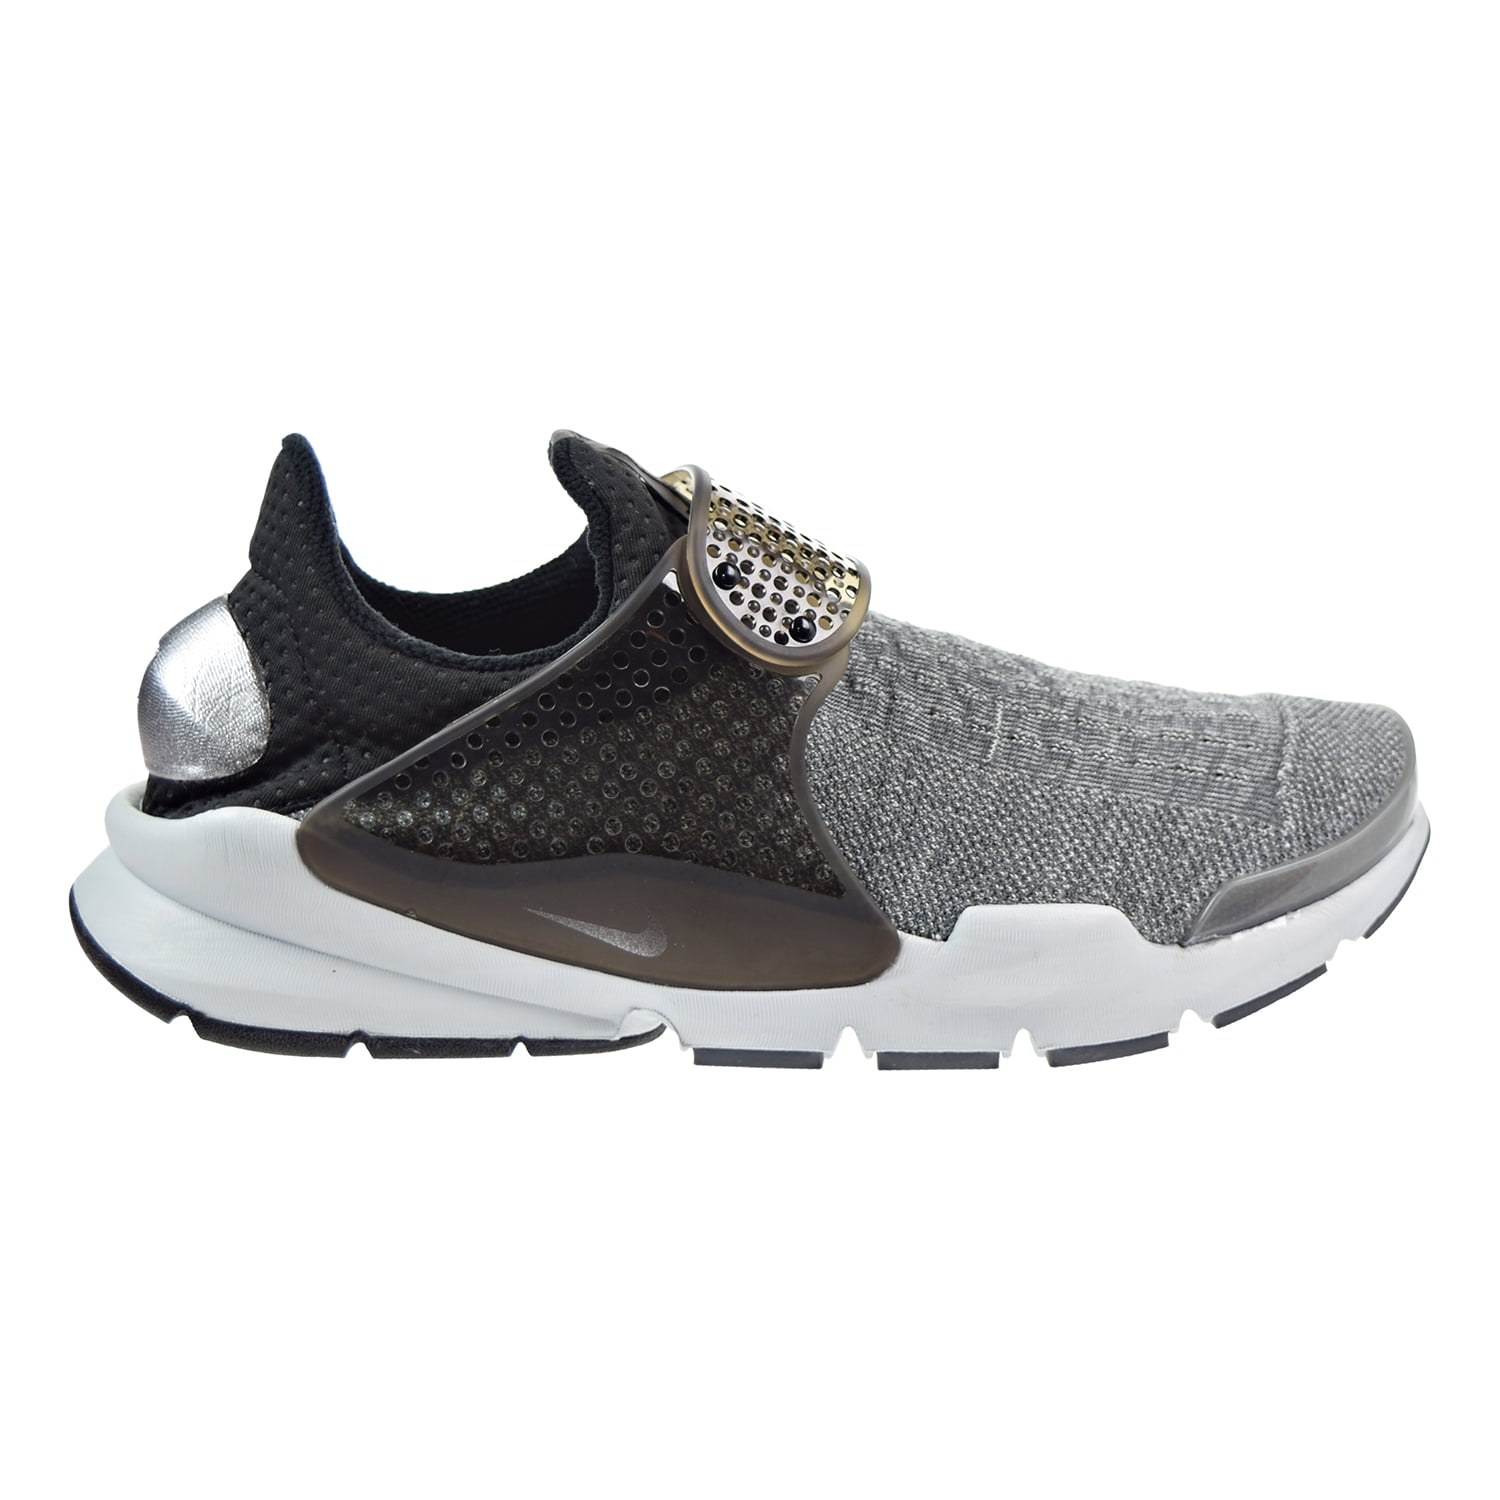 Sock Dart SE Men's Shoe Grey/Pure Platinum/Aluminum/Black 859553-002 - Walmart.com